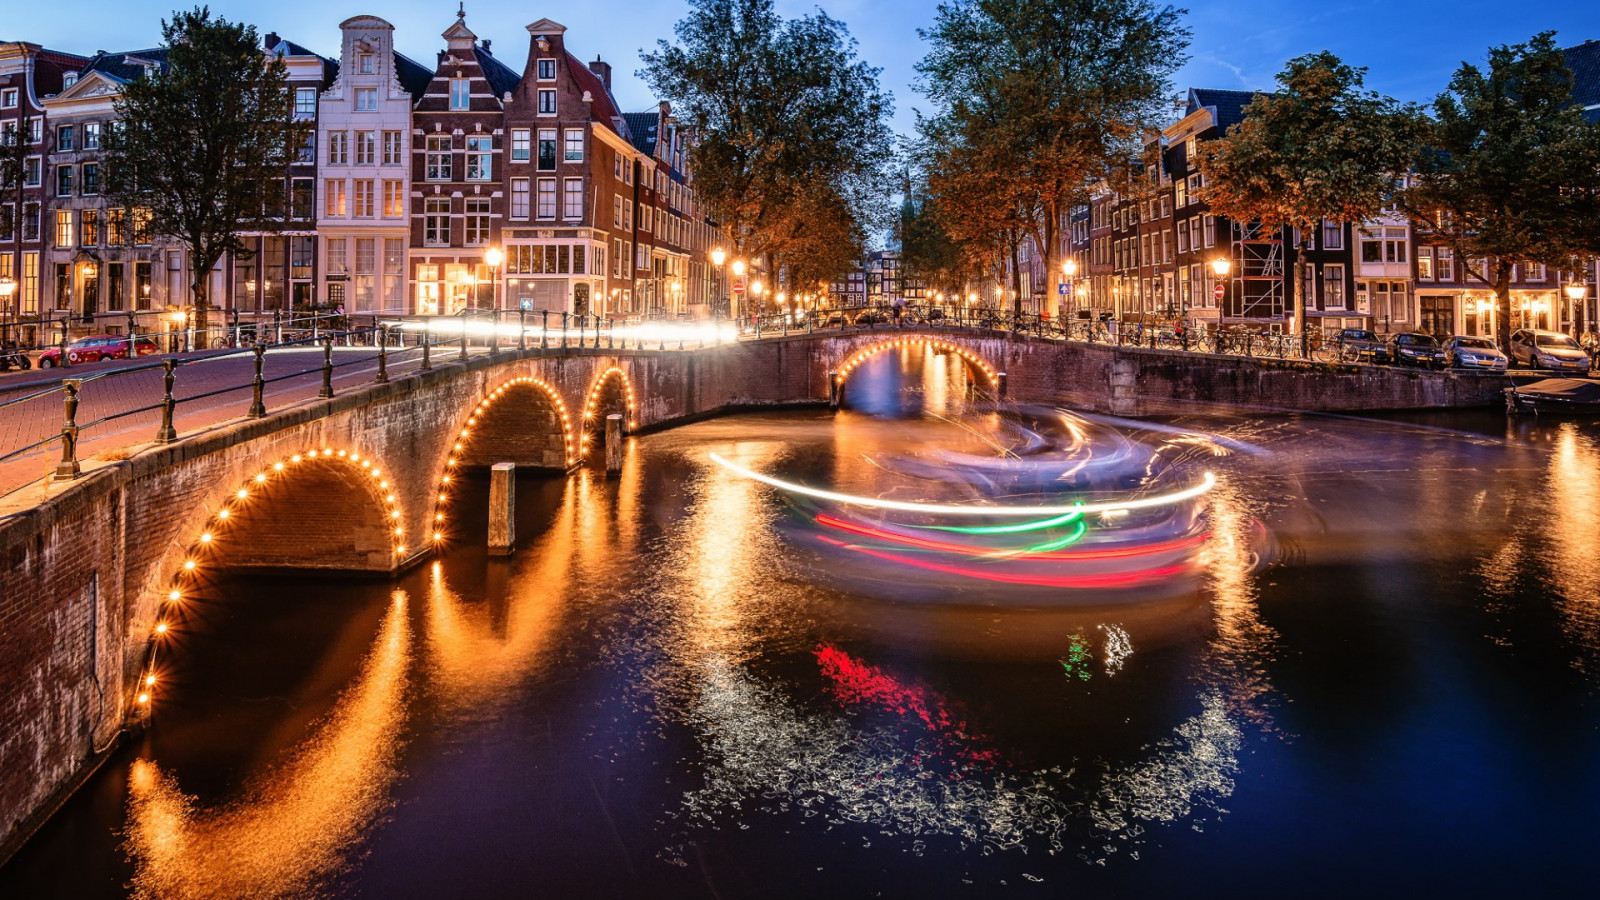 Amsterdam by night wallpaper 1600x900